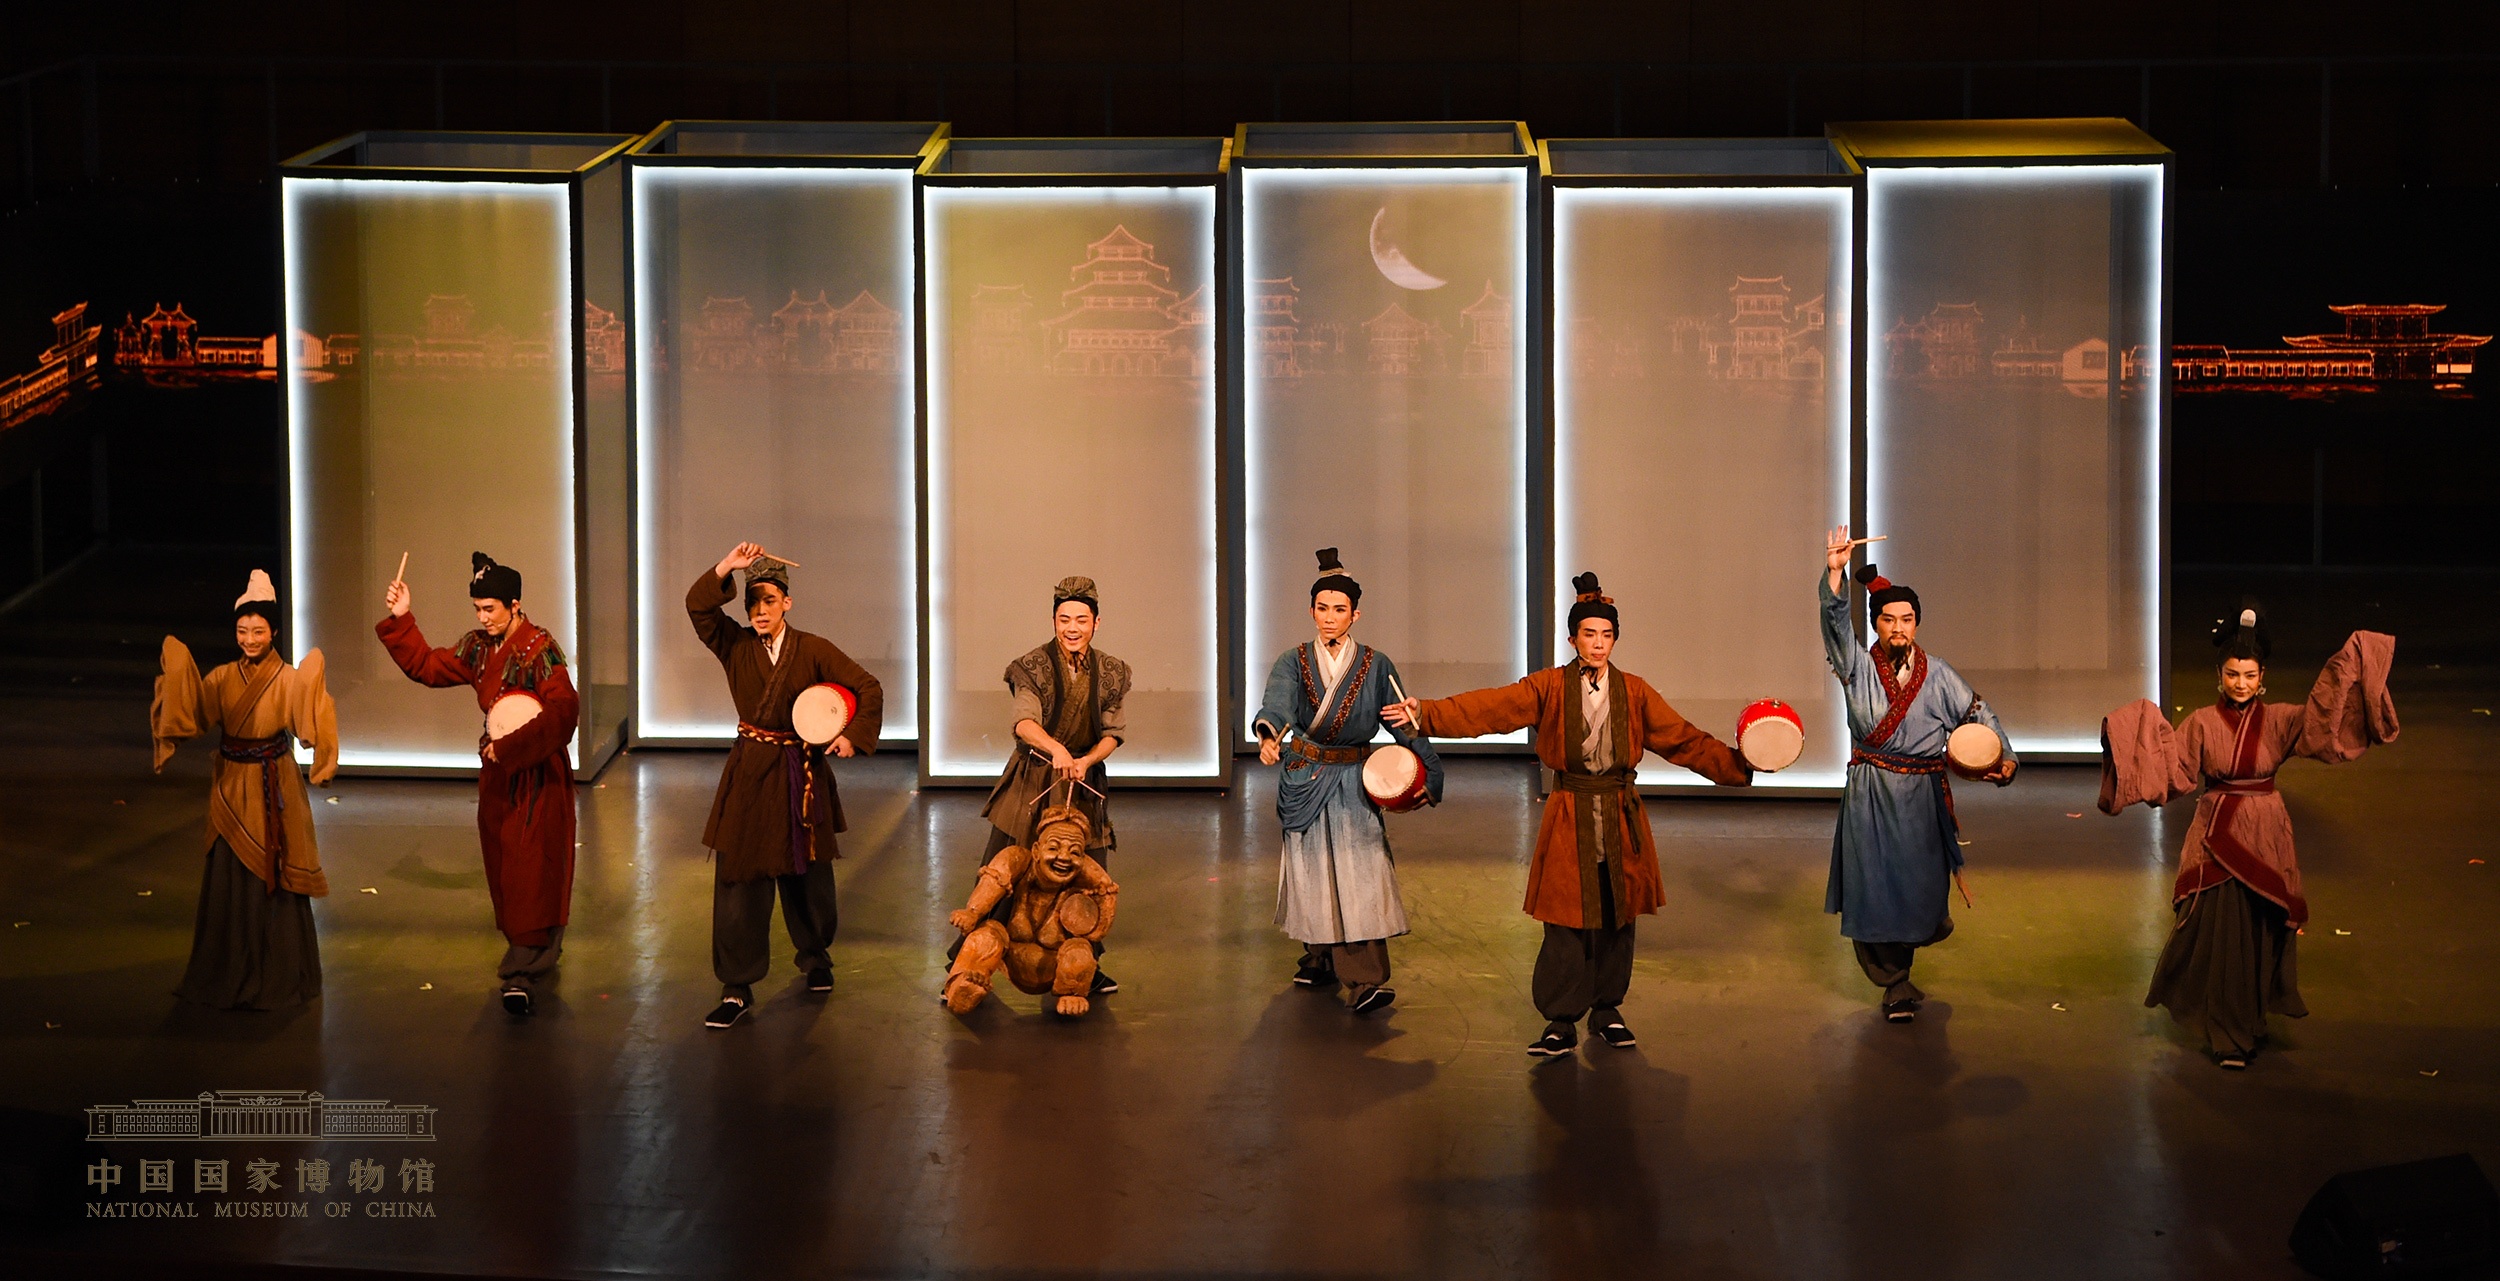 国宝级文物击鼓说唱俑穿越两千年 在国博舞台“活起来”